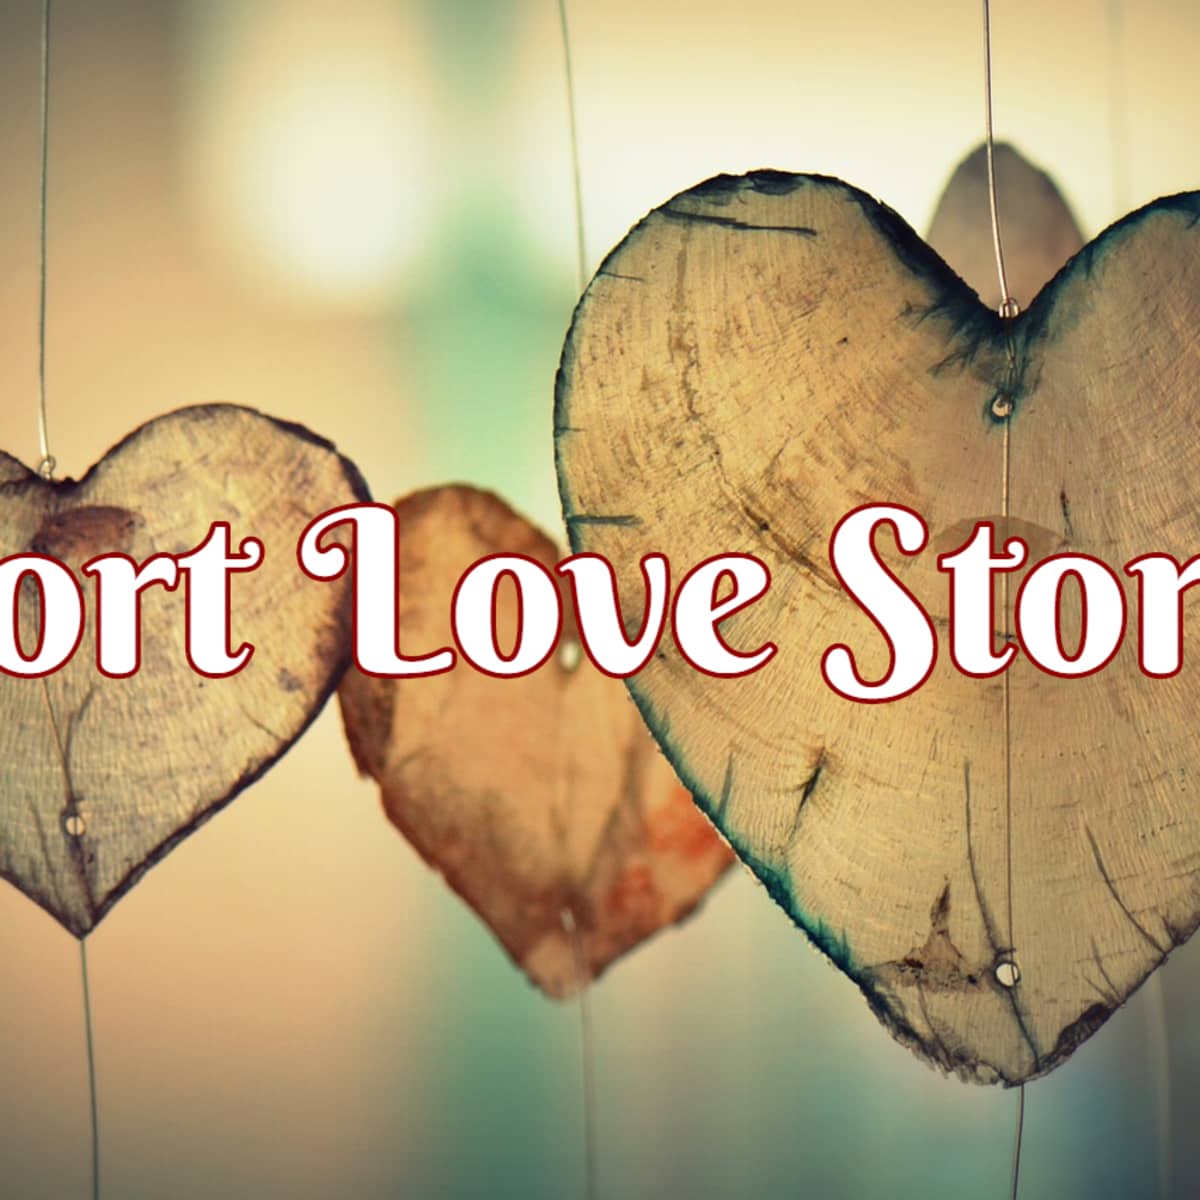 Short Love Stories Online - Owlcation